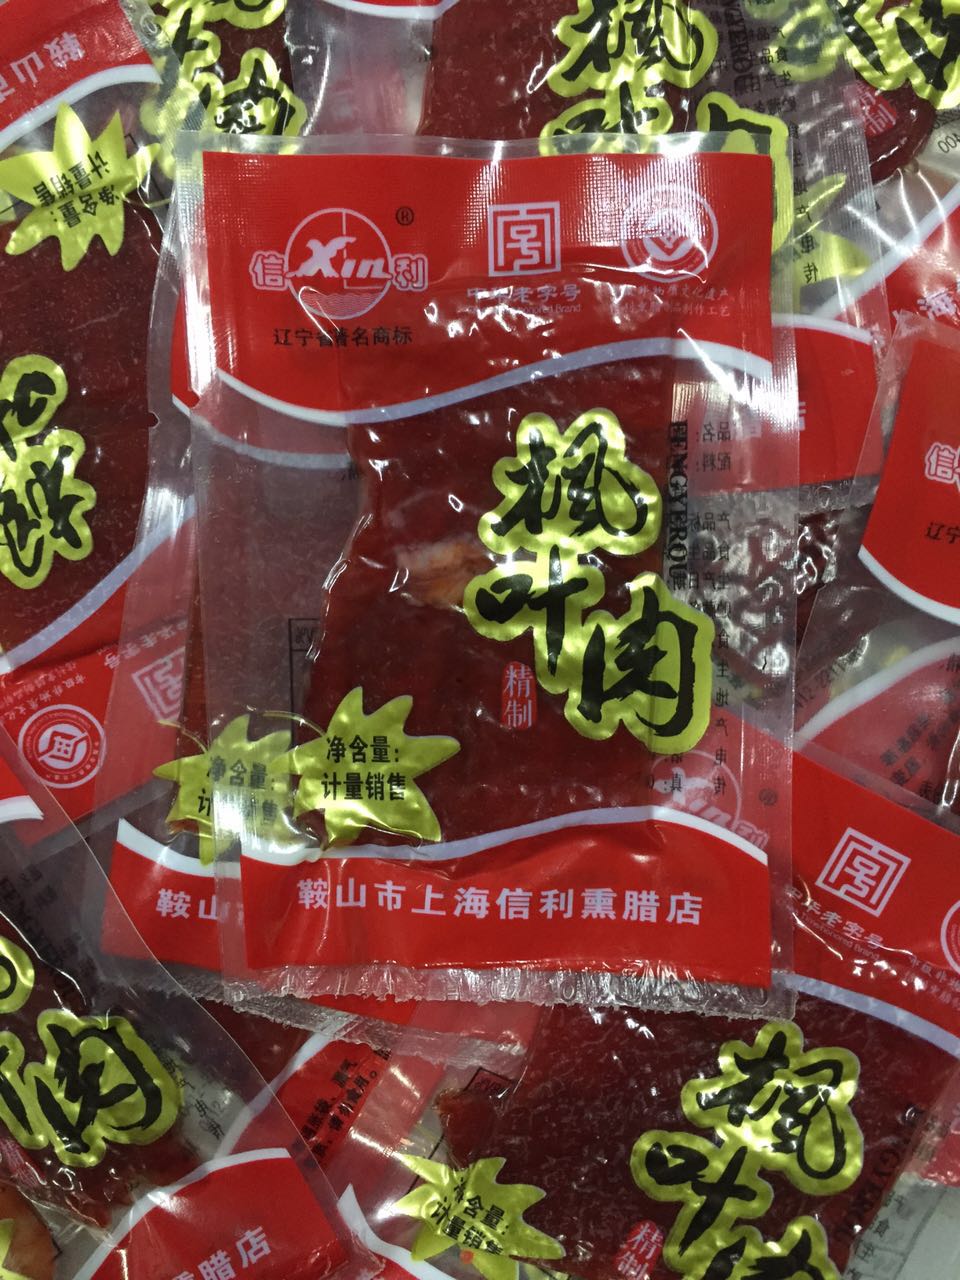 鞍山市上海信利熏腊店 枫叶肉干500g满2斤以上包邮